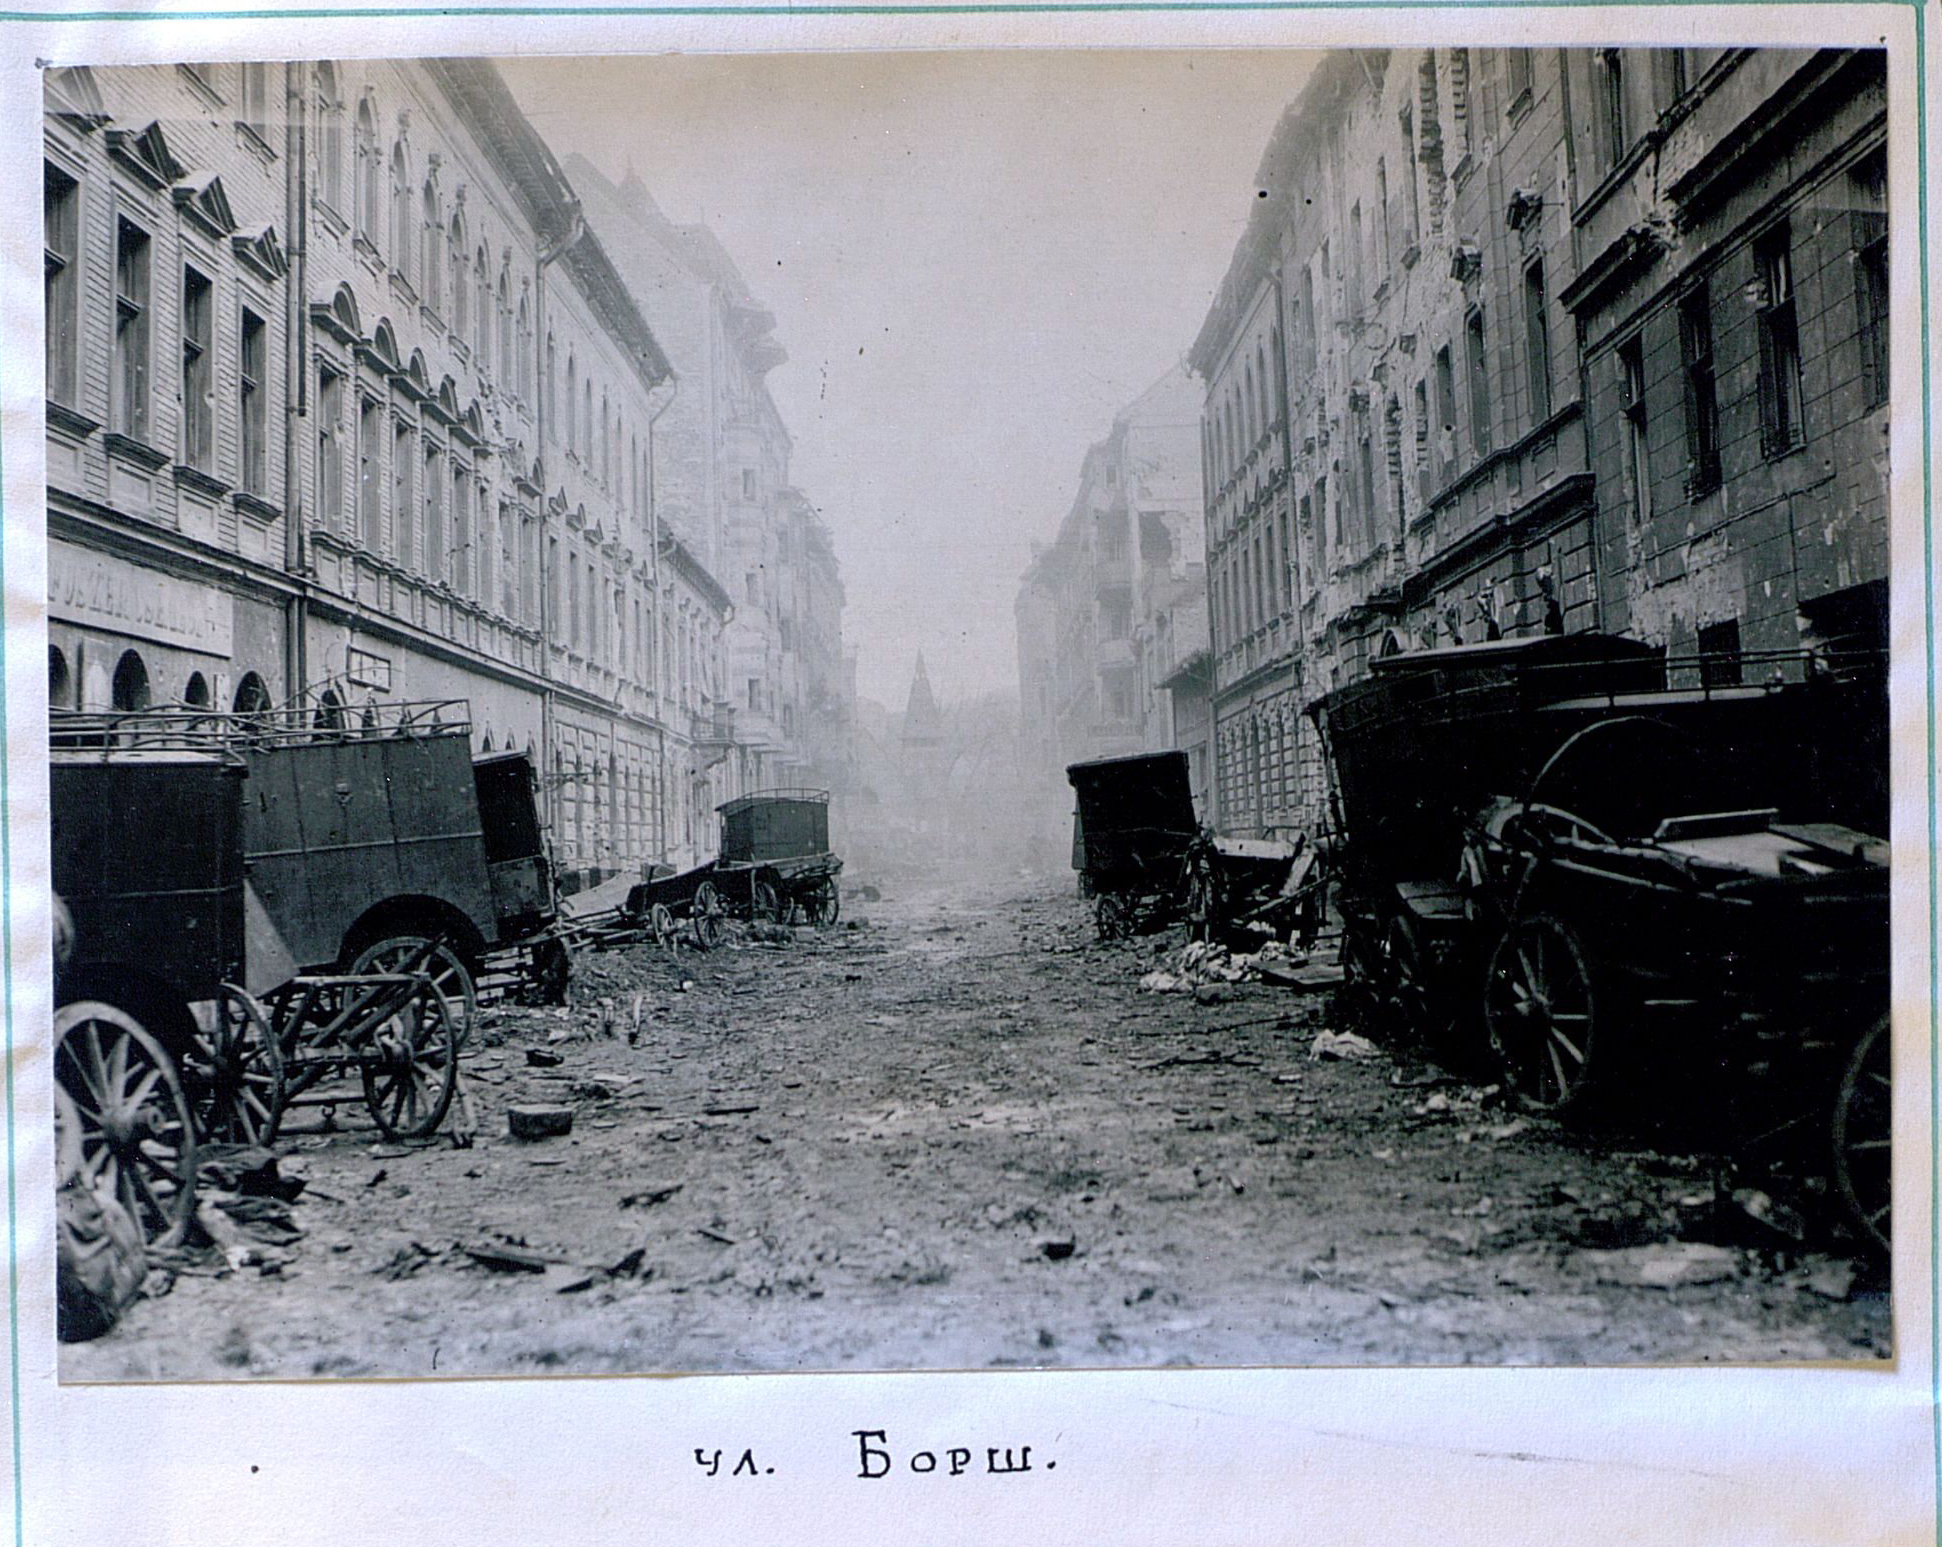 二战欧洲战场最血腥、最昂贵的城市战之一——布达佩斯战役